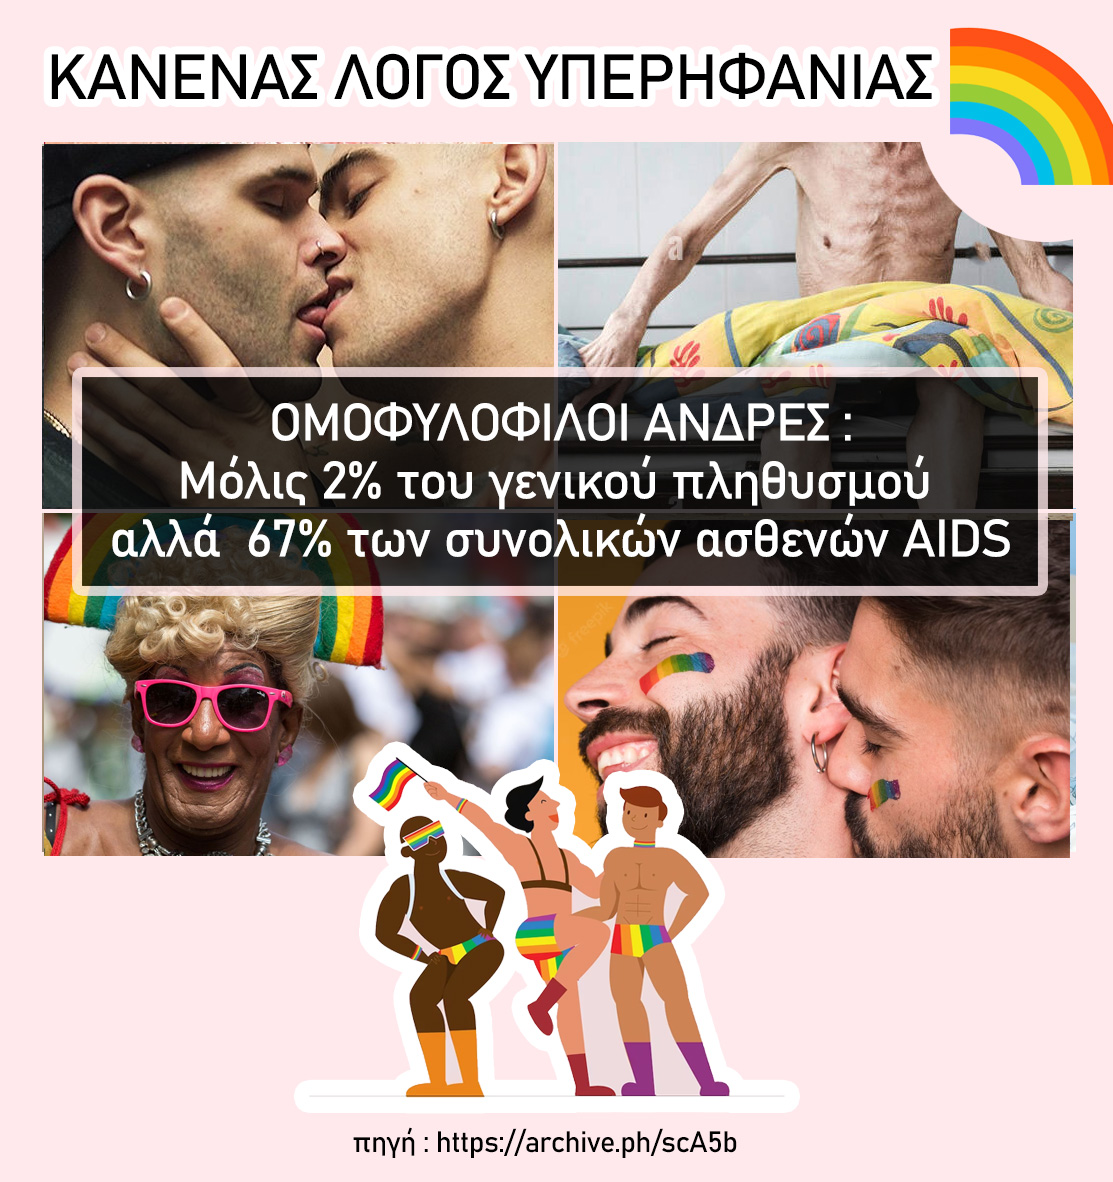 #ΚΑΝΕΝΑΣ_ΛΟΓΟΣ_ΥΠΕΡΗΦΑΝΙΑΣ
ΟΜΟΦΥΛΟΦΙΛΟΙ ΑΝΔΡΕΣ: Μόλις 2% του γενικού πληθυσμού αλλά 67% των συνολικών ασθενών AIDS.

πηγή: archive.ph/scA5b

#PrideMonth #athensPride2023 #greekpride #προστατεψτε_τα_παιδια
#σκοταδισμος_pride #μηνας_υπερηφανειας #boycott_publicGR